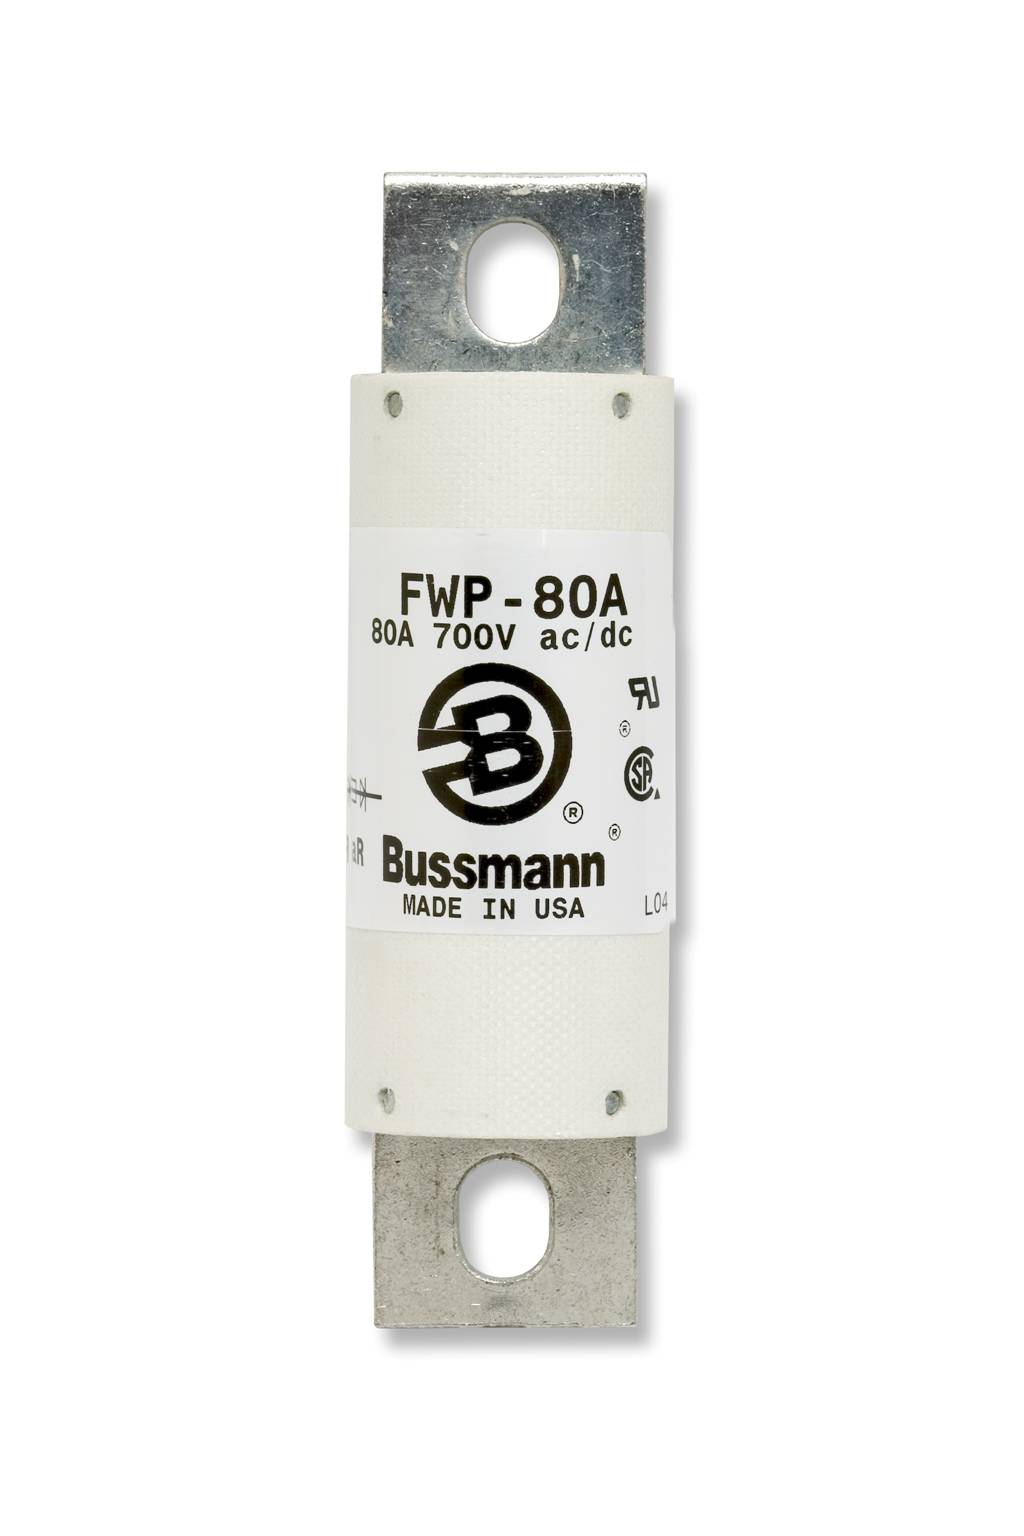 Part # FWP-1000A  Manufacturer BUSSMANN  Product Type 700 Volt Fuse